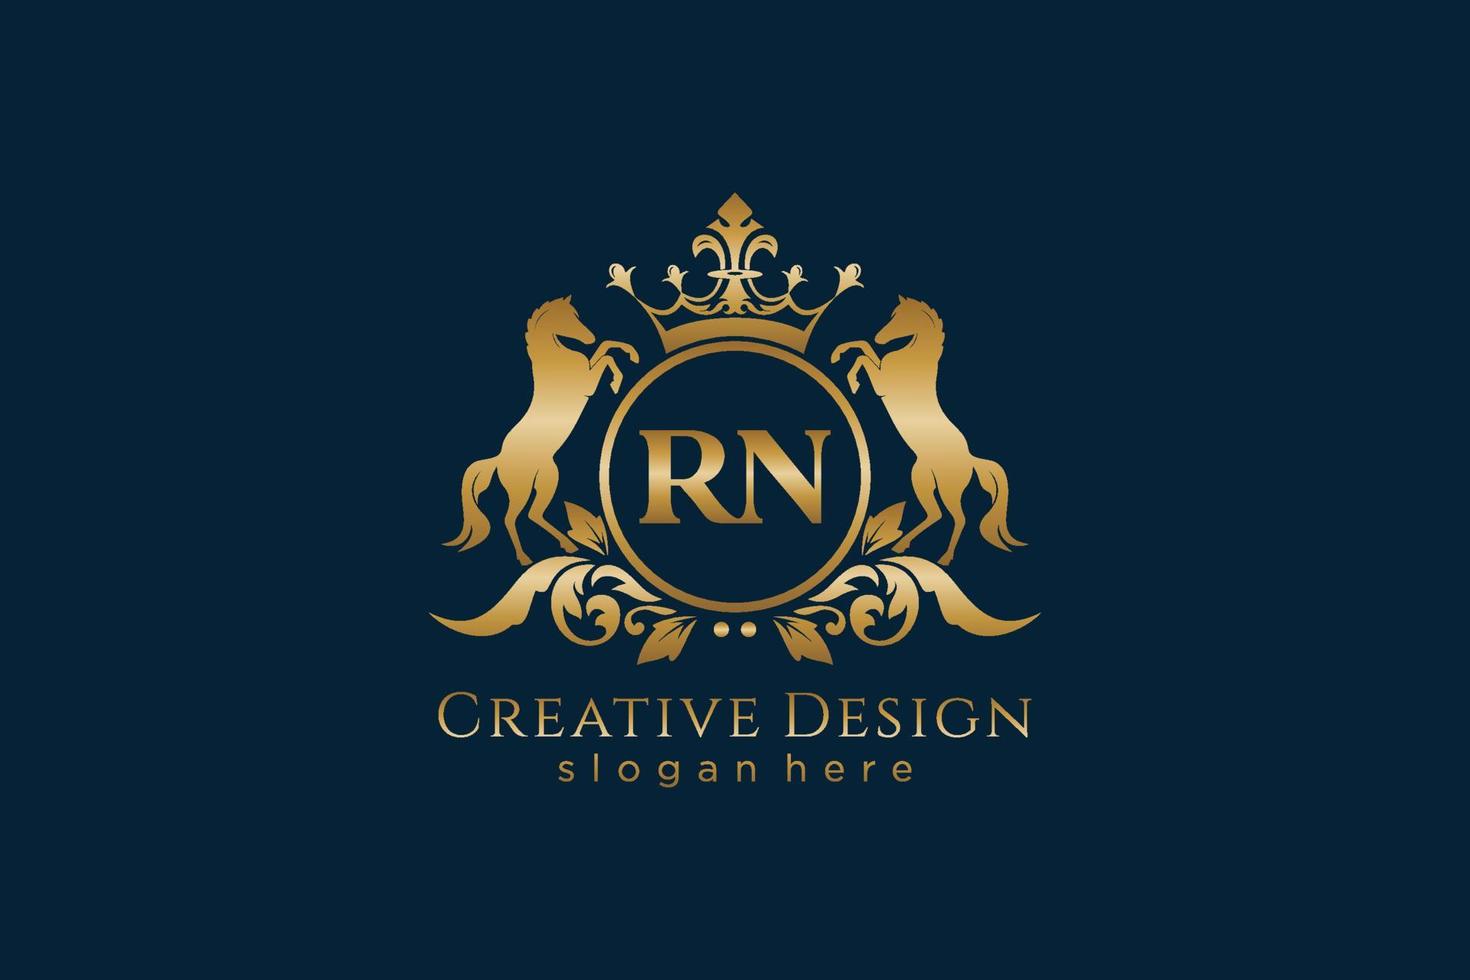 crista dourada retrô inicial rn com círculo e dois cavalos, modelo de crachá com pergaminhos e coroa real - perfeito para projetos de marca luxuosos vetor